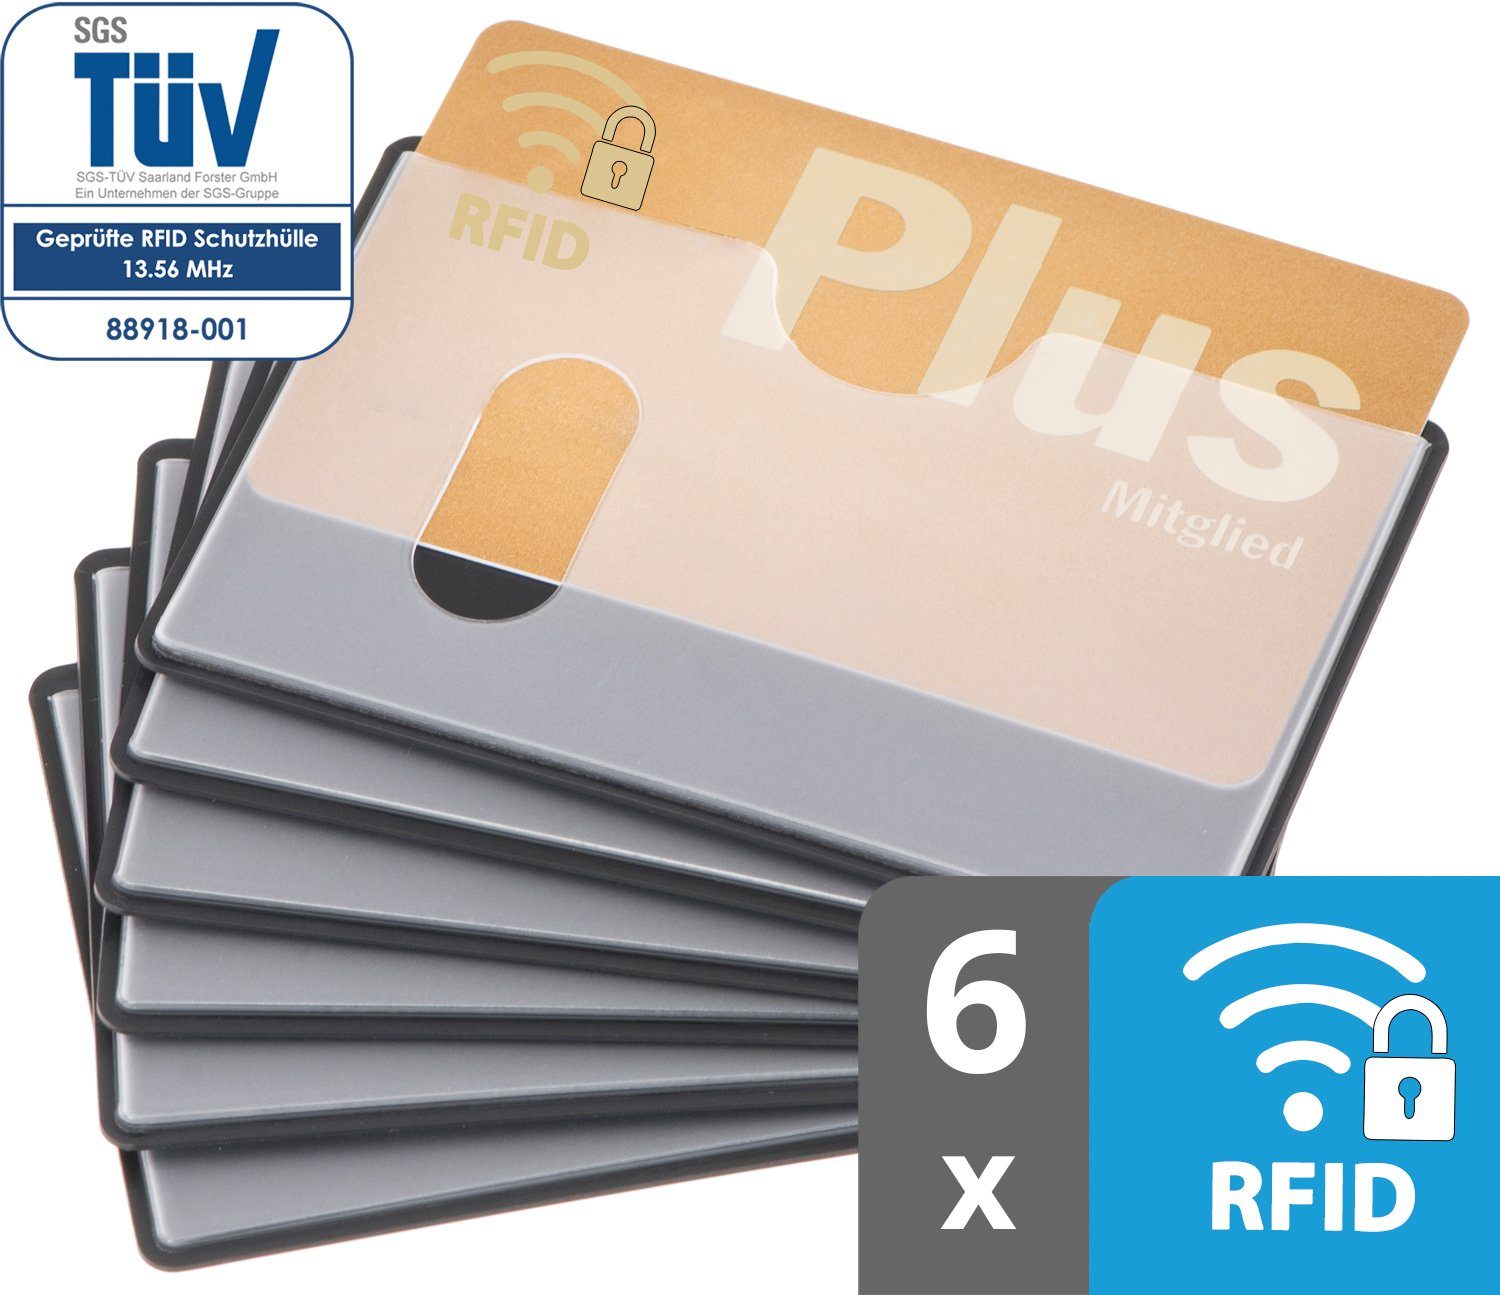 6 RFID Kreditkarte, abgeschirmt, Etui transparent, Kreditkartenhüllen Stück Scheckkarte - x valonic 59 mm, Schutz, 91 oben NFZ RFID-Block valonic Einschub